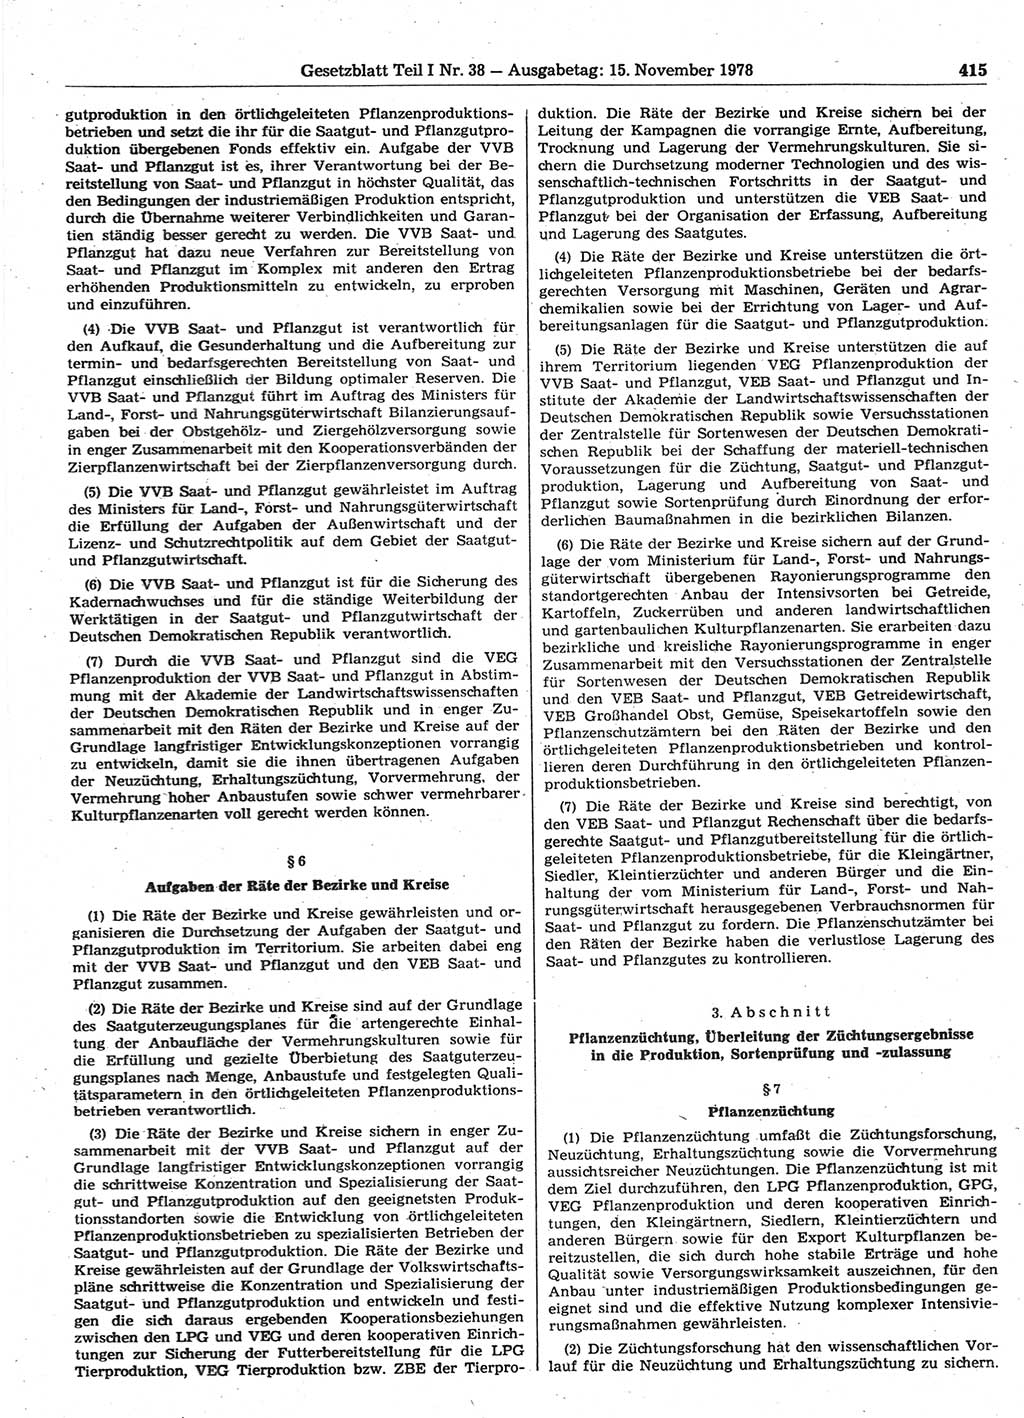 Gesetzblatt (GBl.) der Deutschen Demokratischen Republik (DDR) Teil Ⅰ 1978, Seite 415 (GBl. DDR Ⅰ 1978, S. 415)